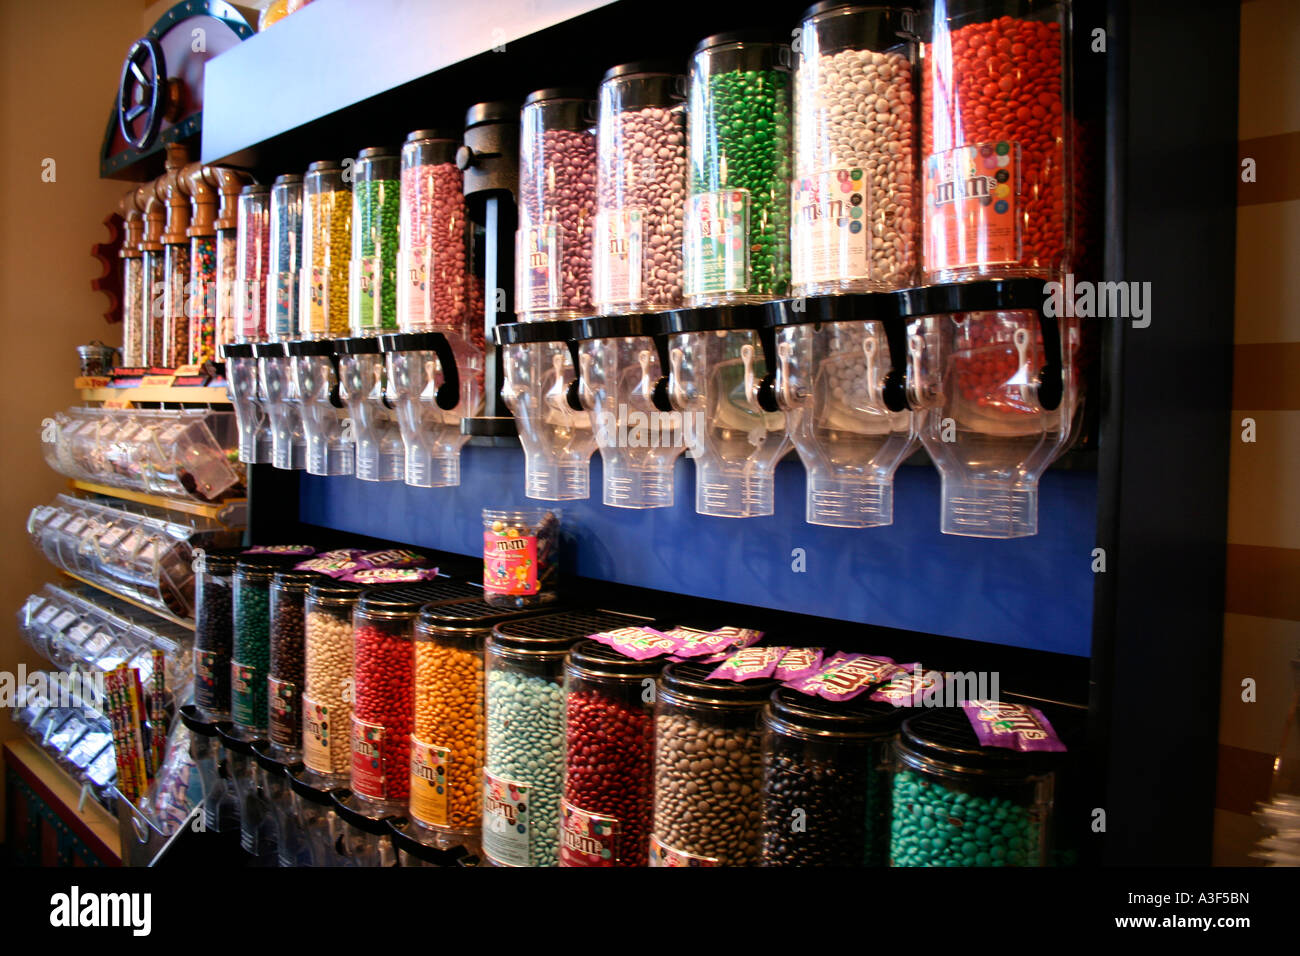 amerikanische Süßigkeiten shop Stockfotografie - Alamy